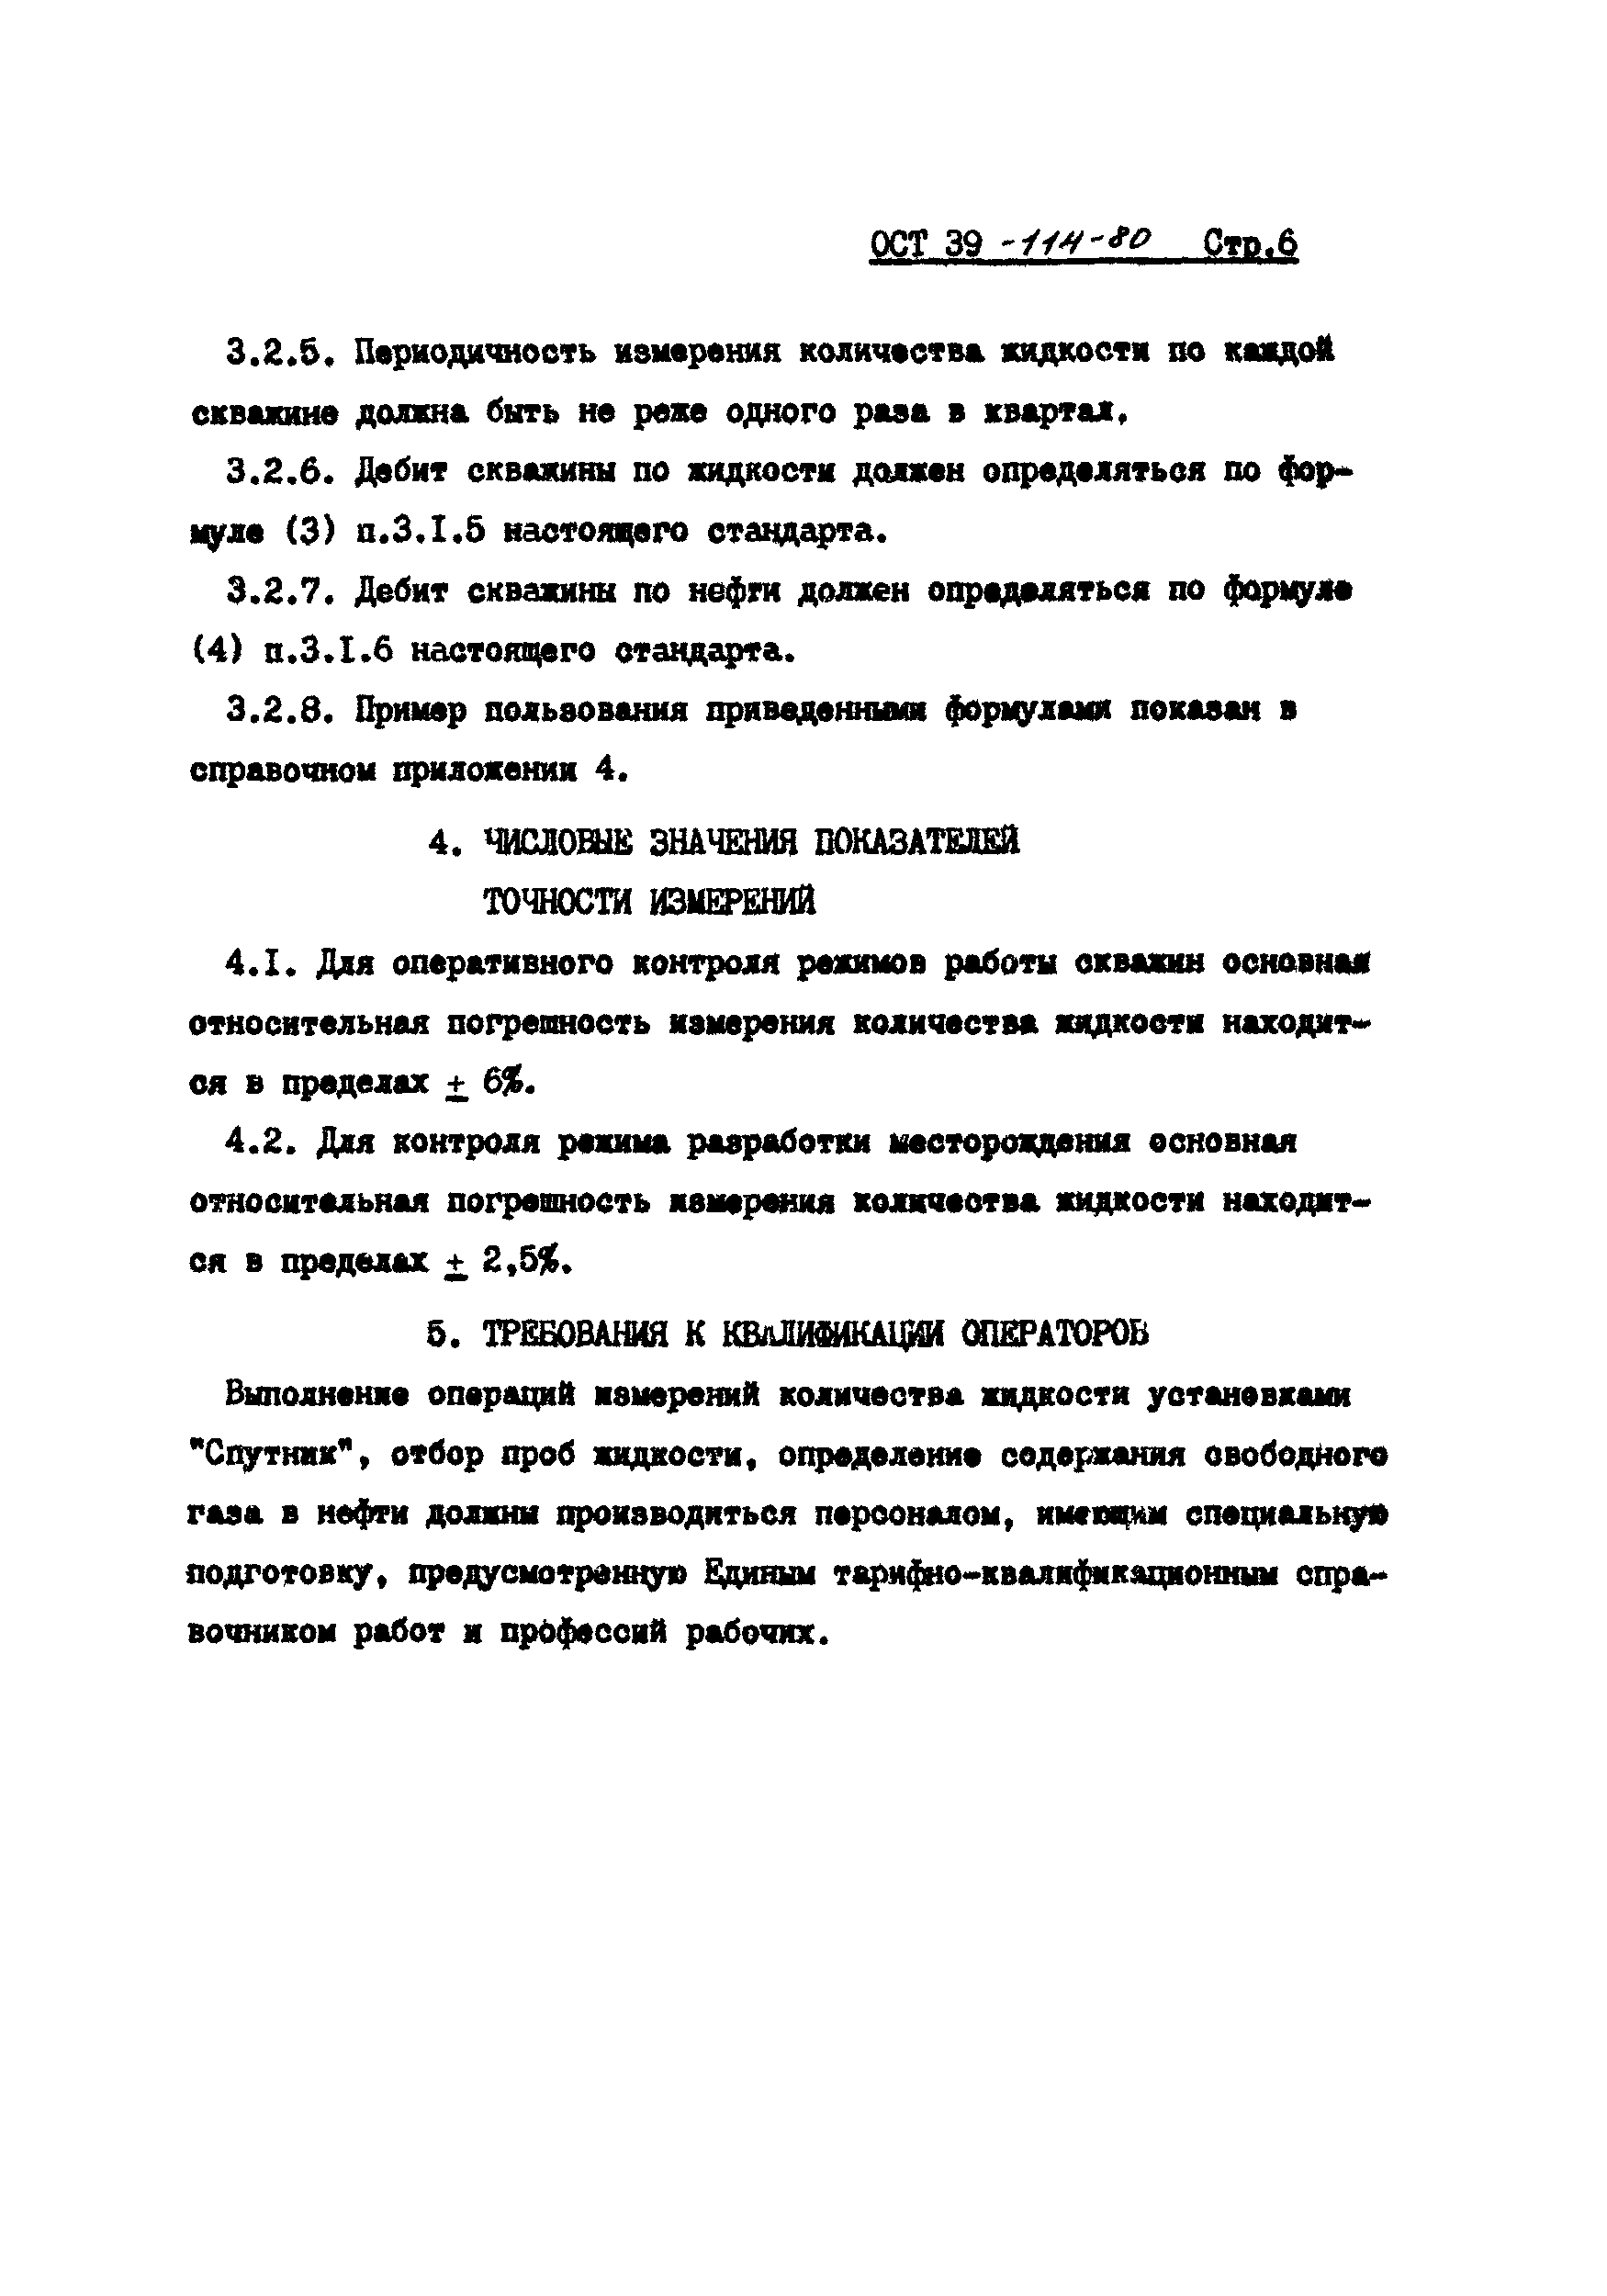 ОСТ 39-114-80